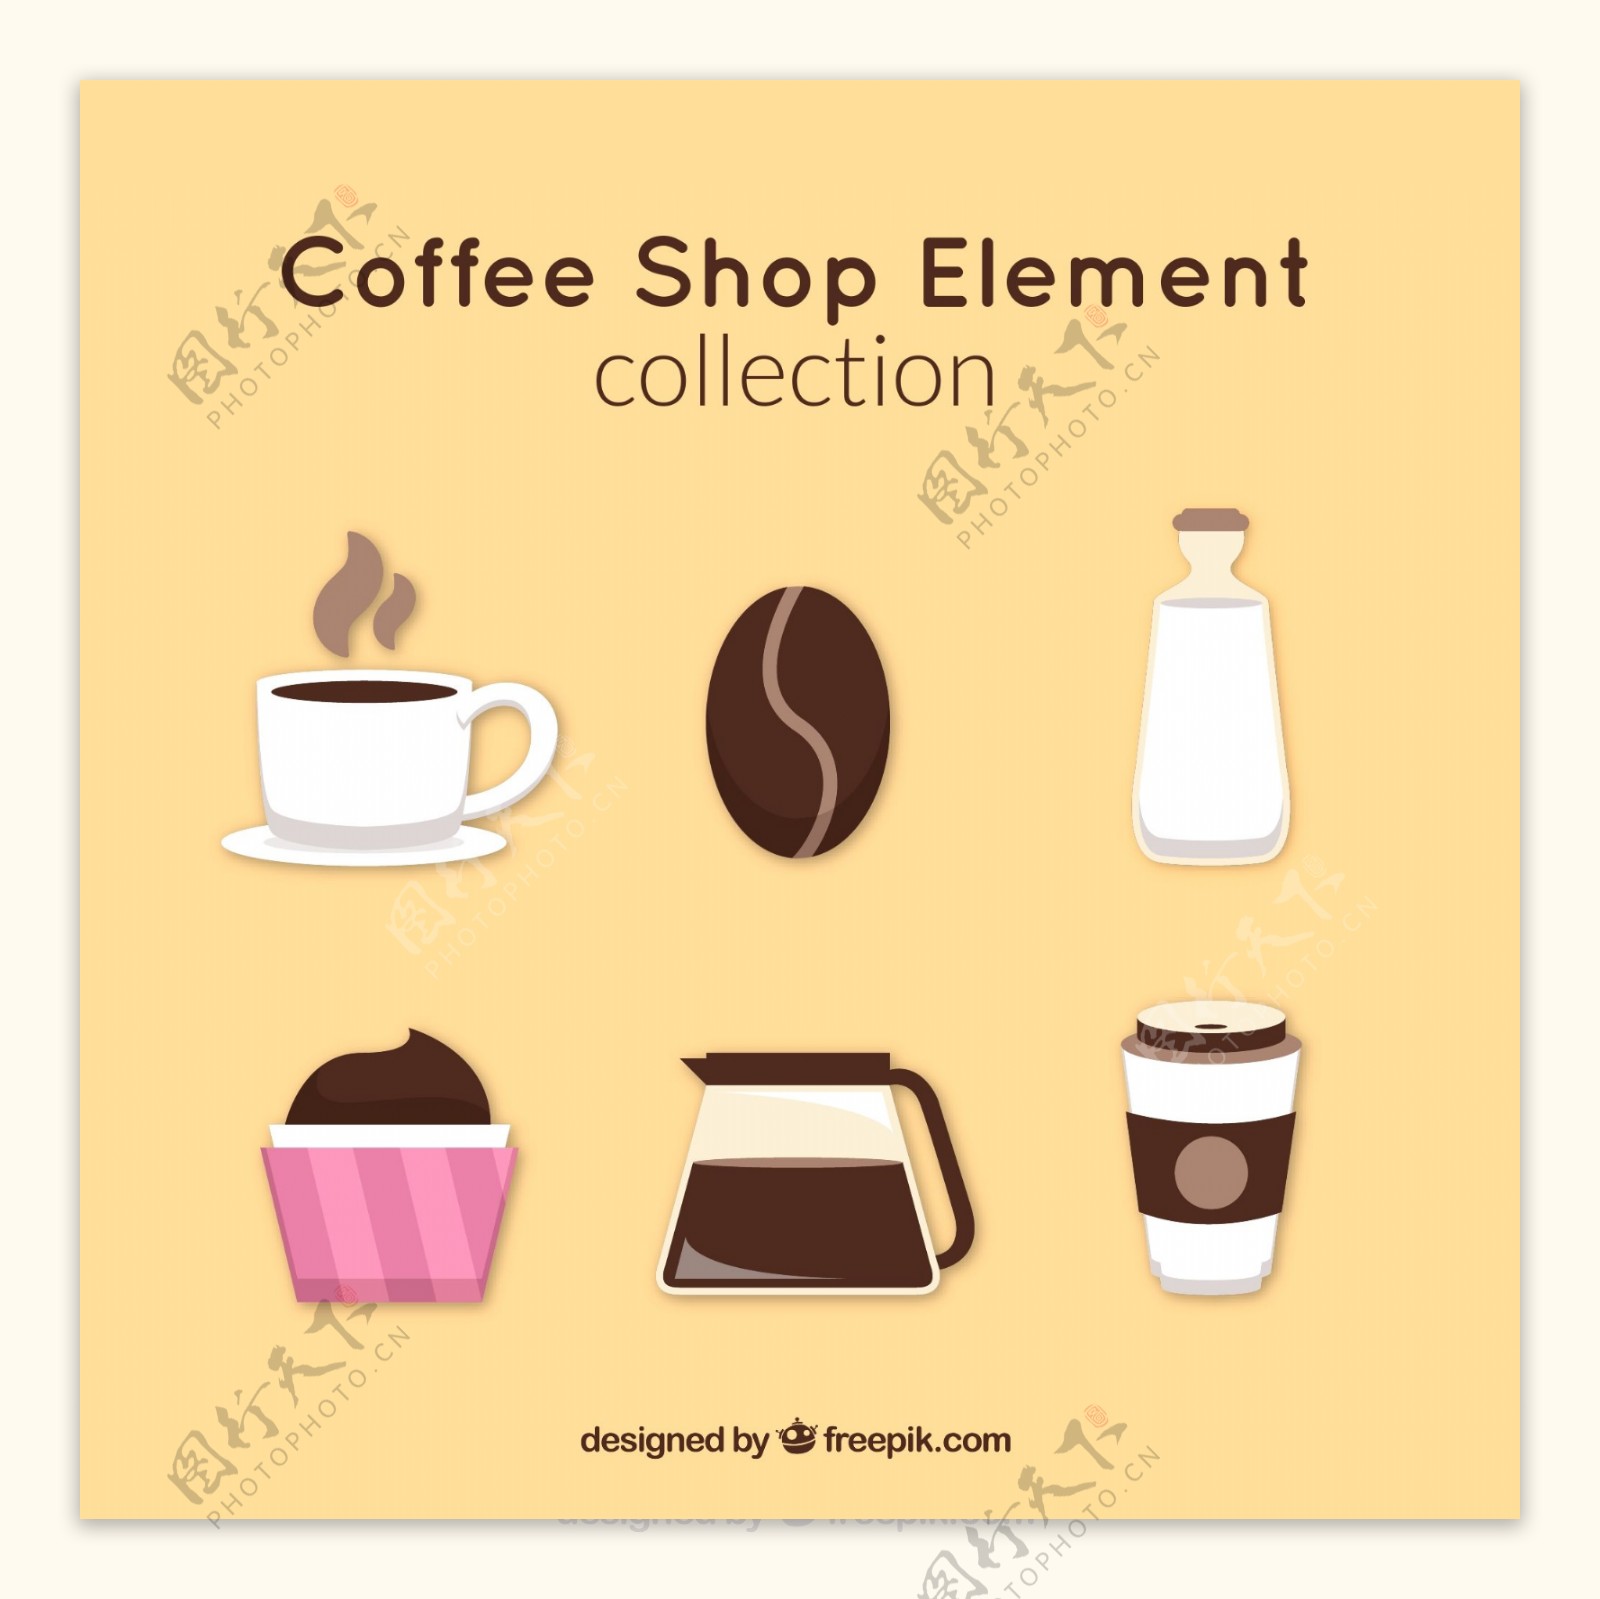 创意咖啡元素图标